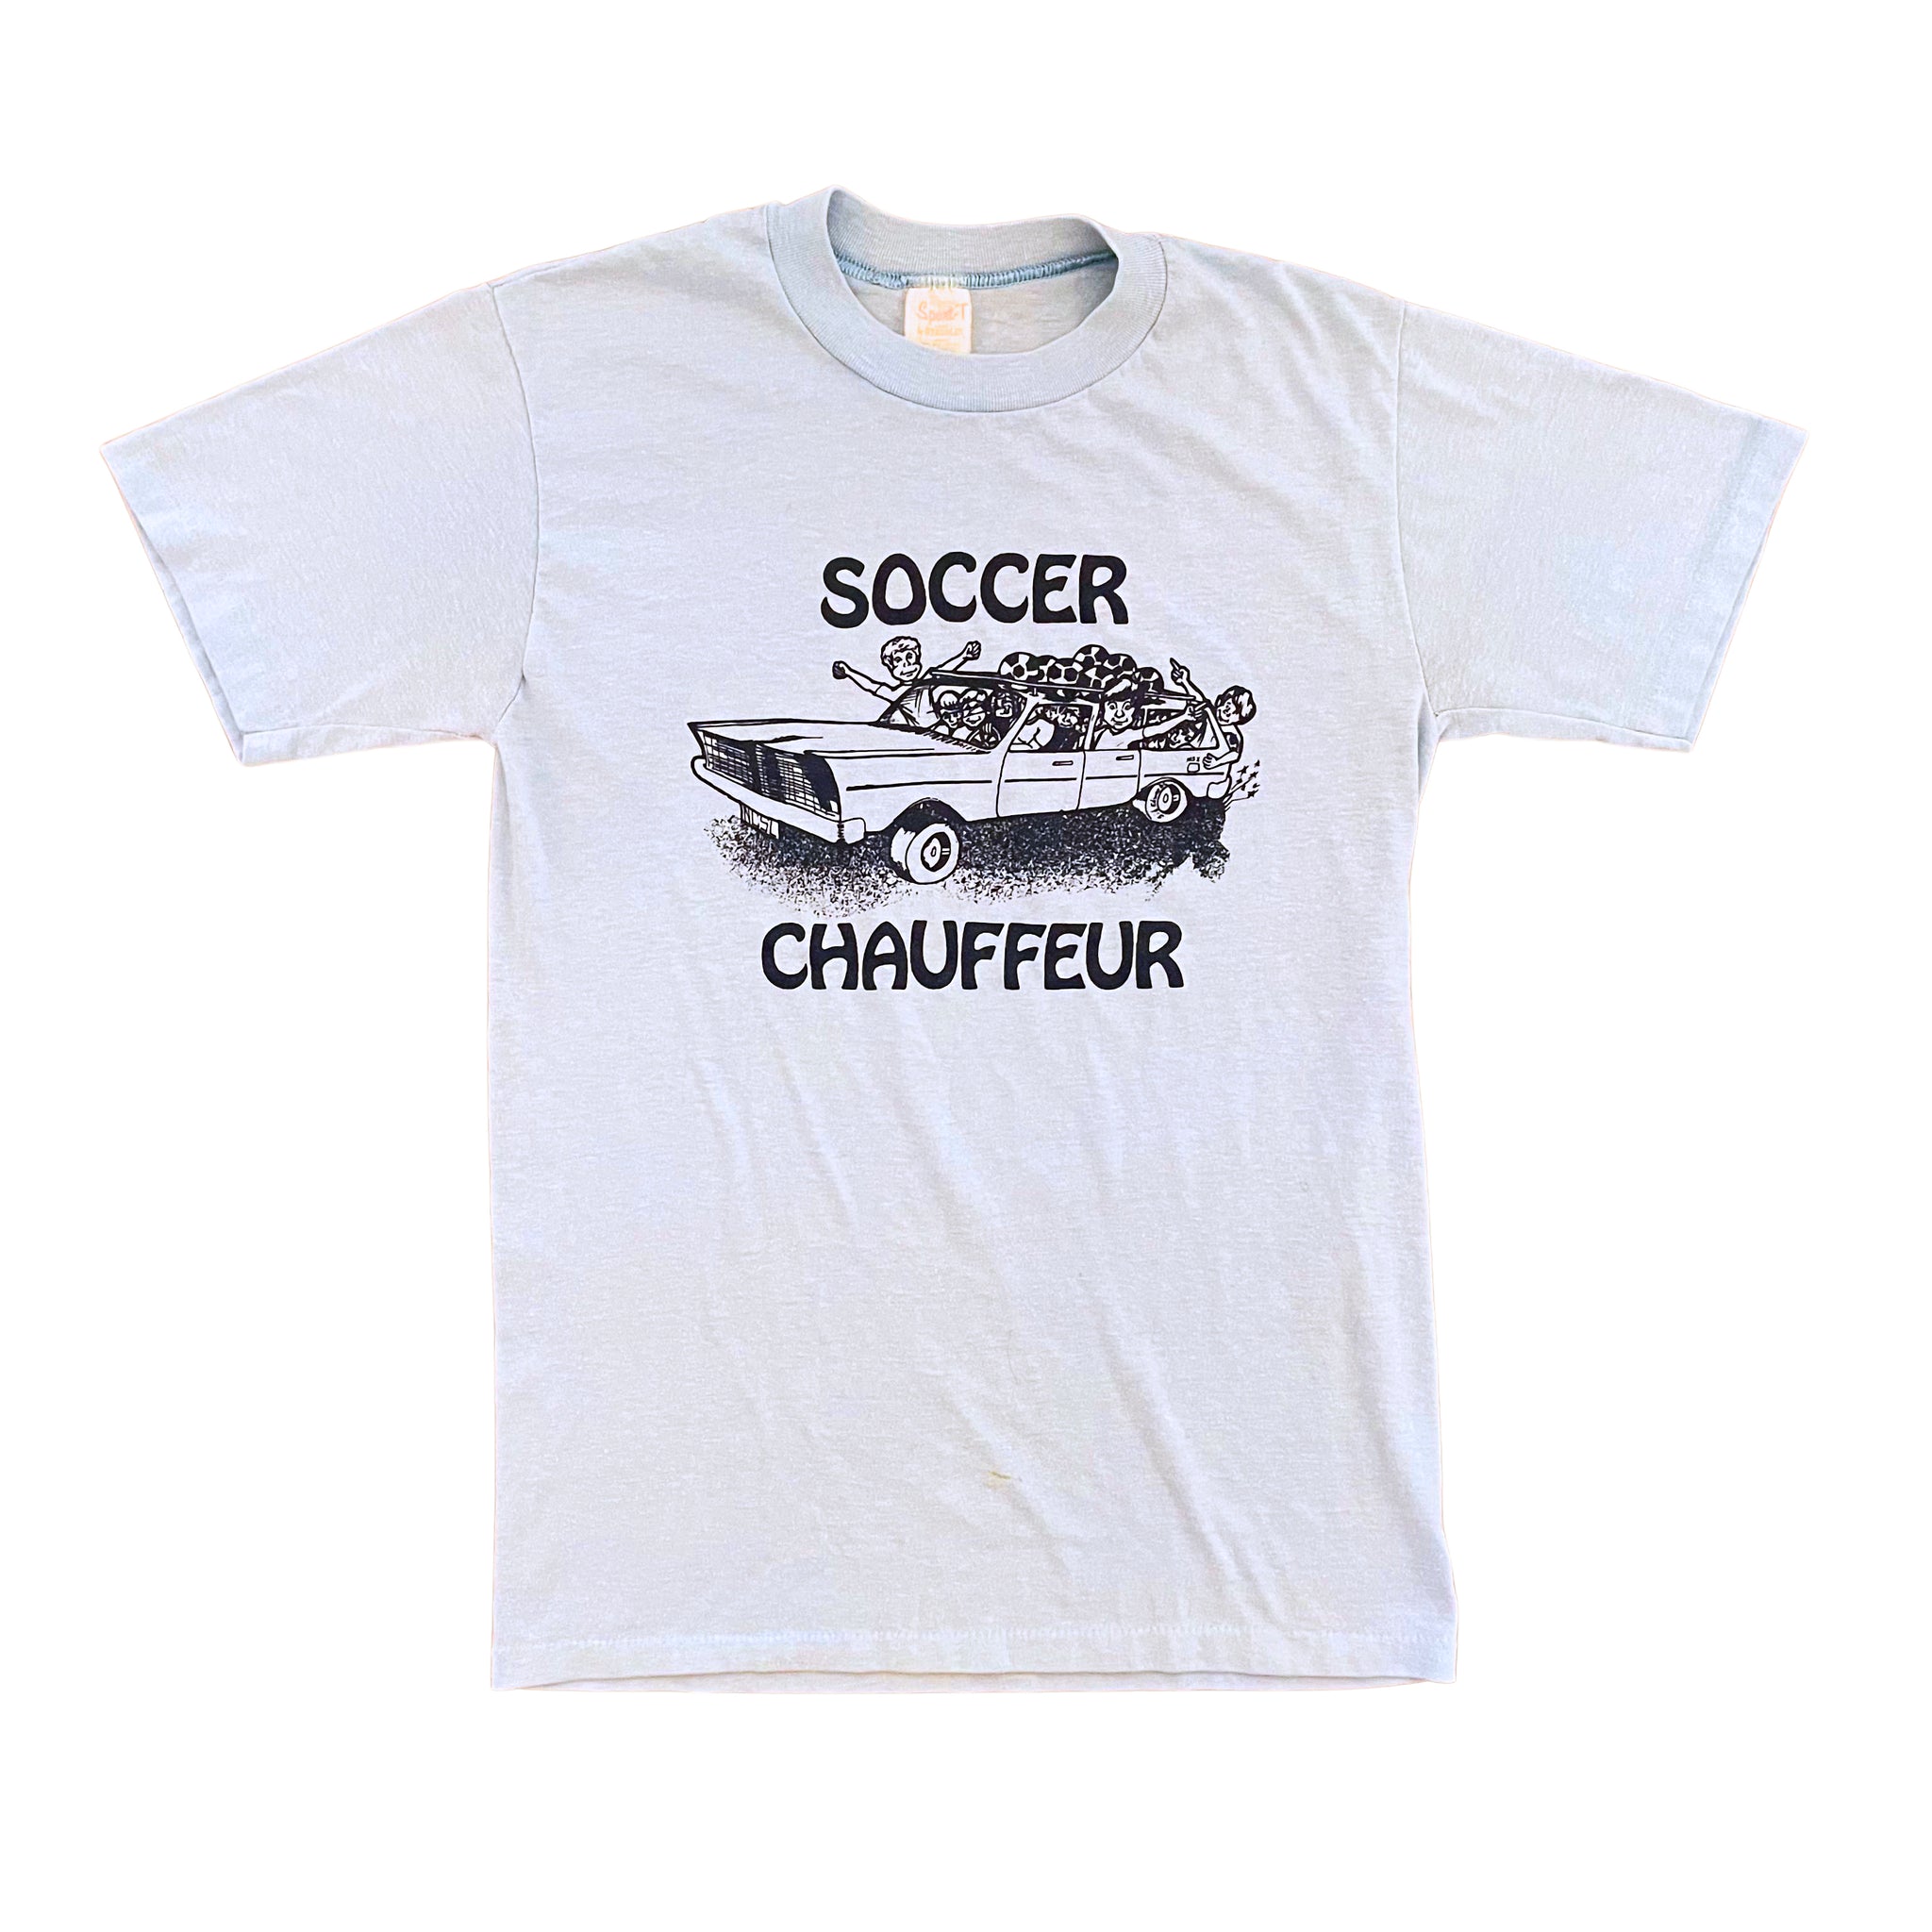 Soccer Chauffer T-Shirt - S